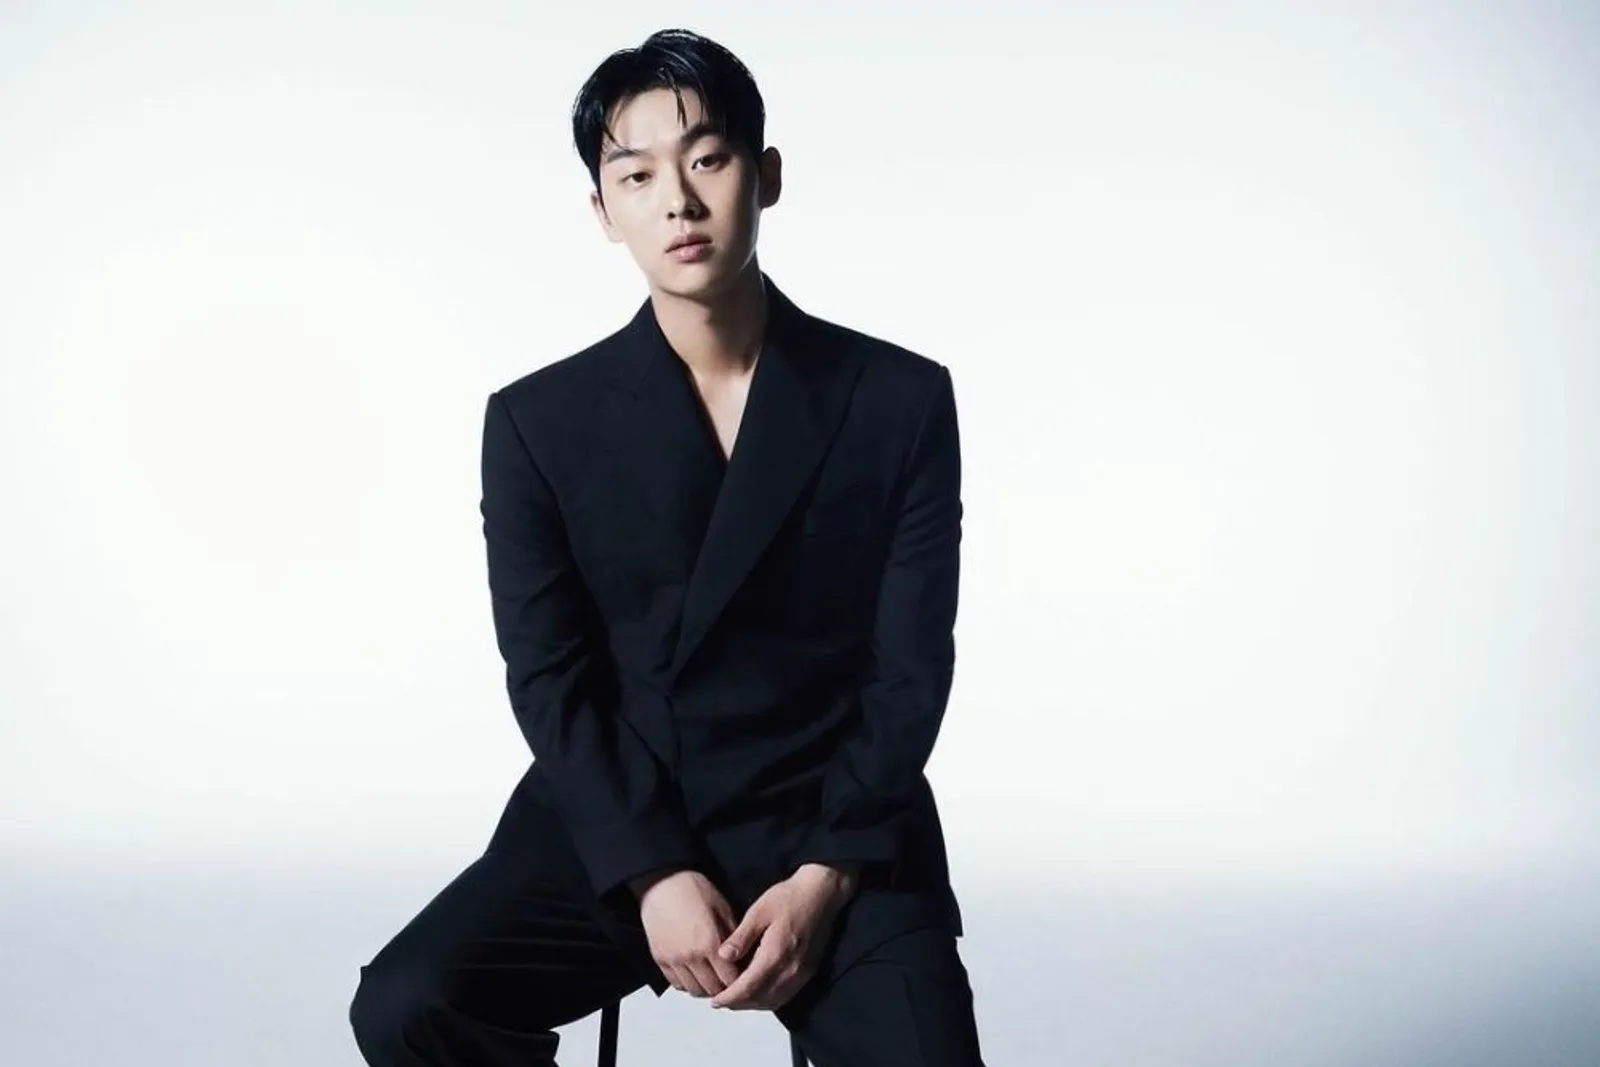 Profil Choi Hyun Wook: Biodata, Karier, dan Drama yang Dibintanginya